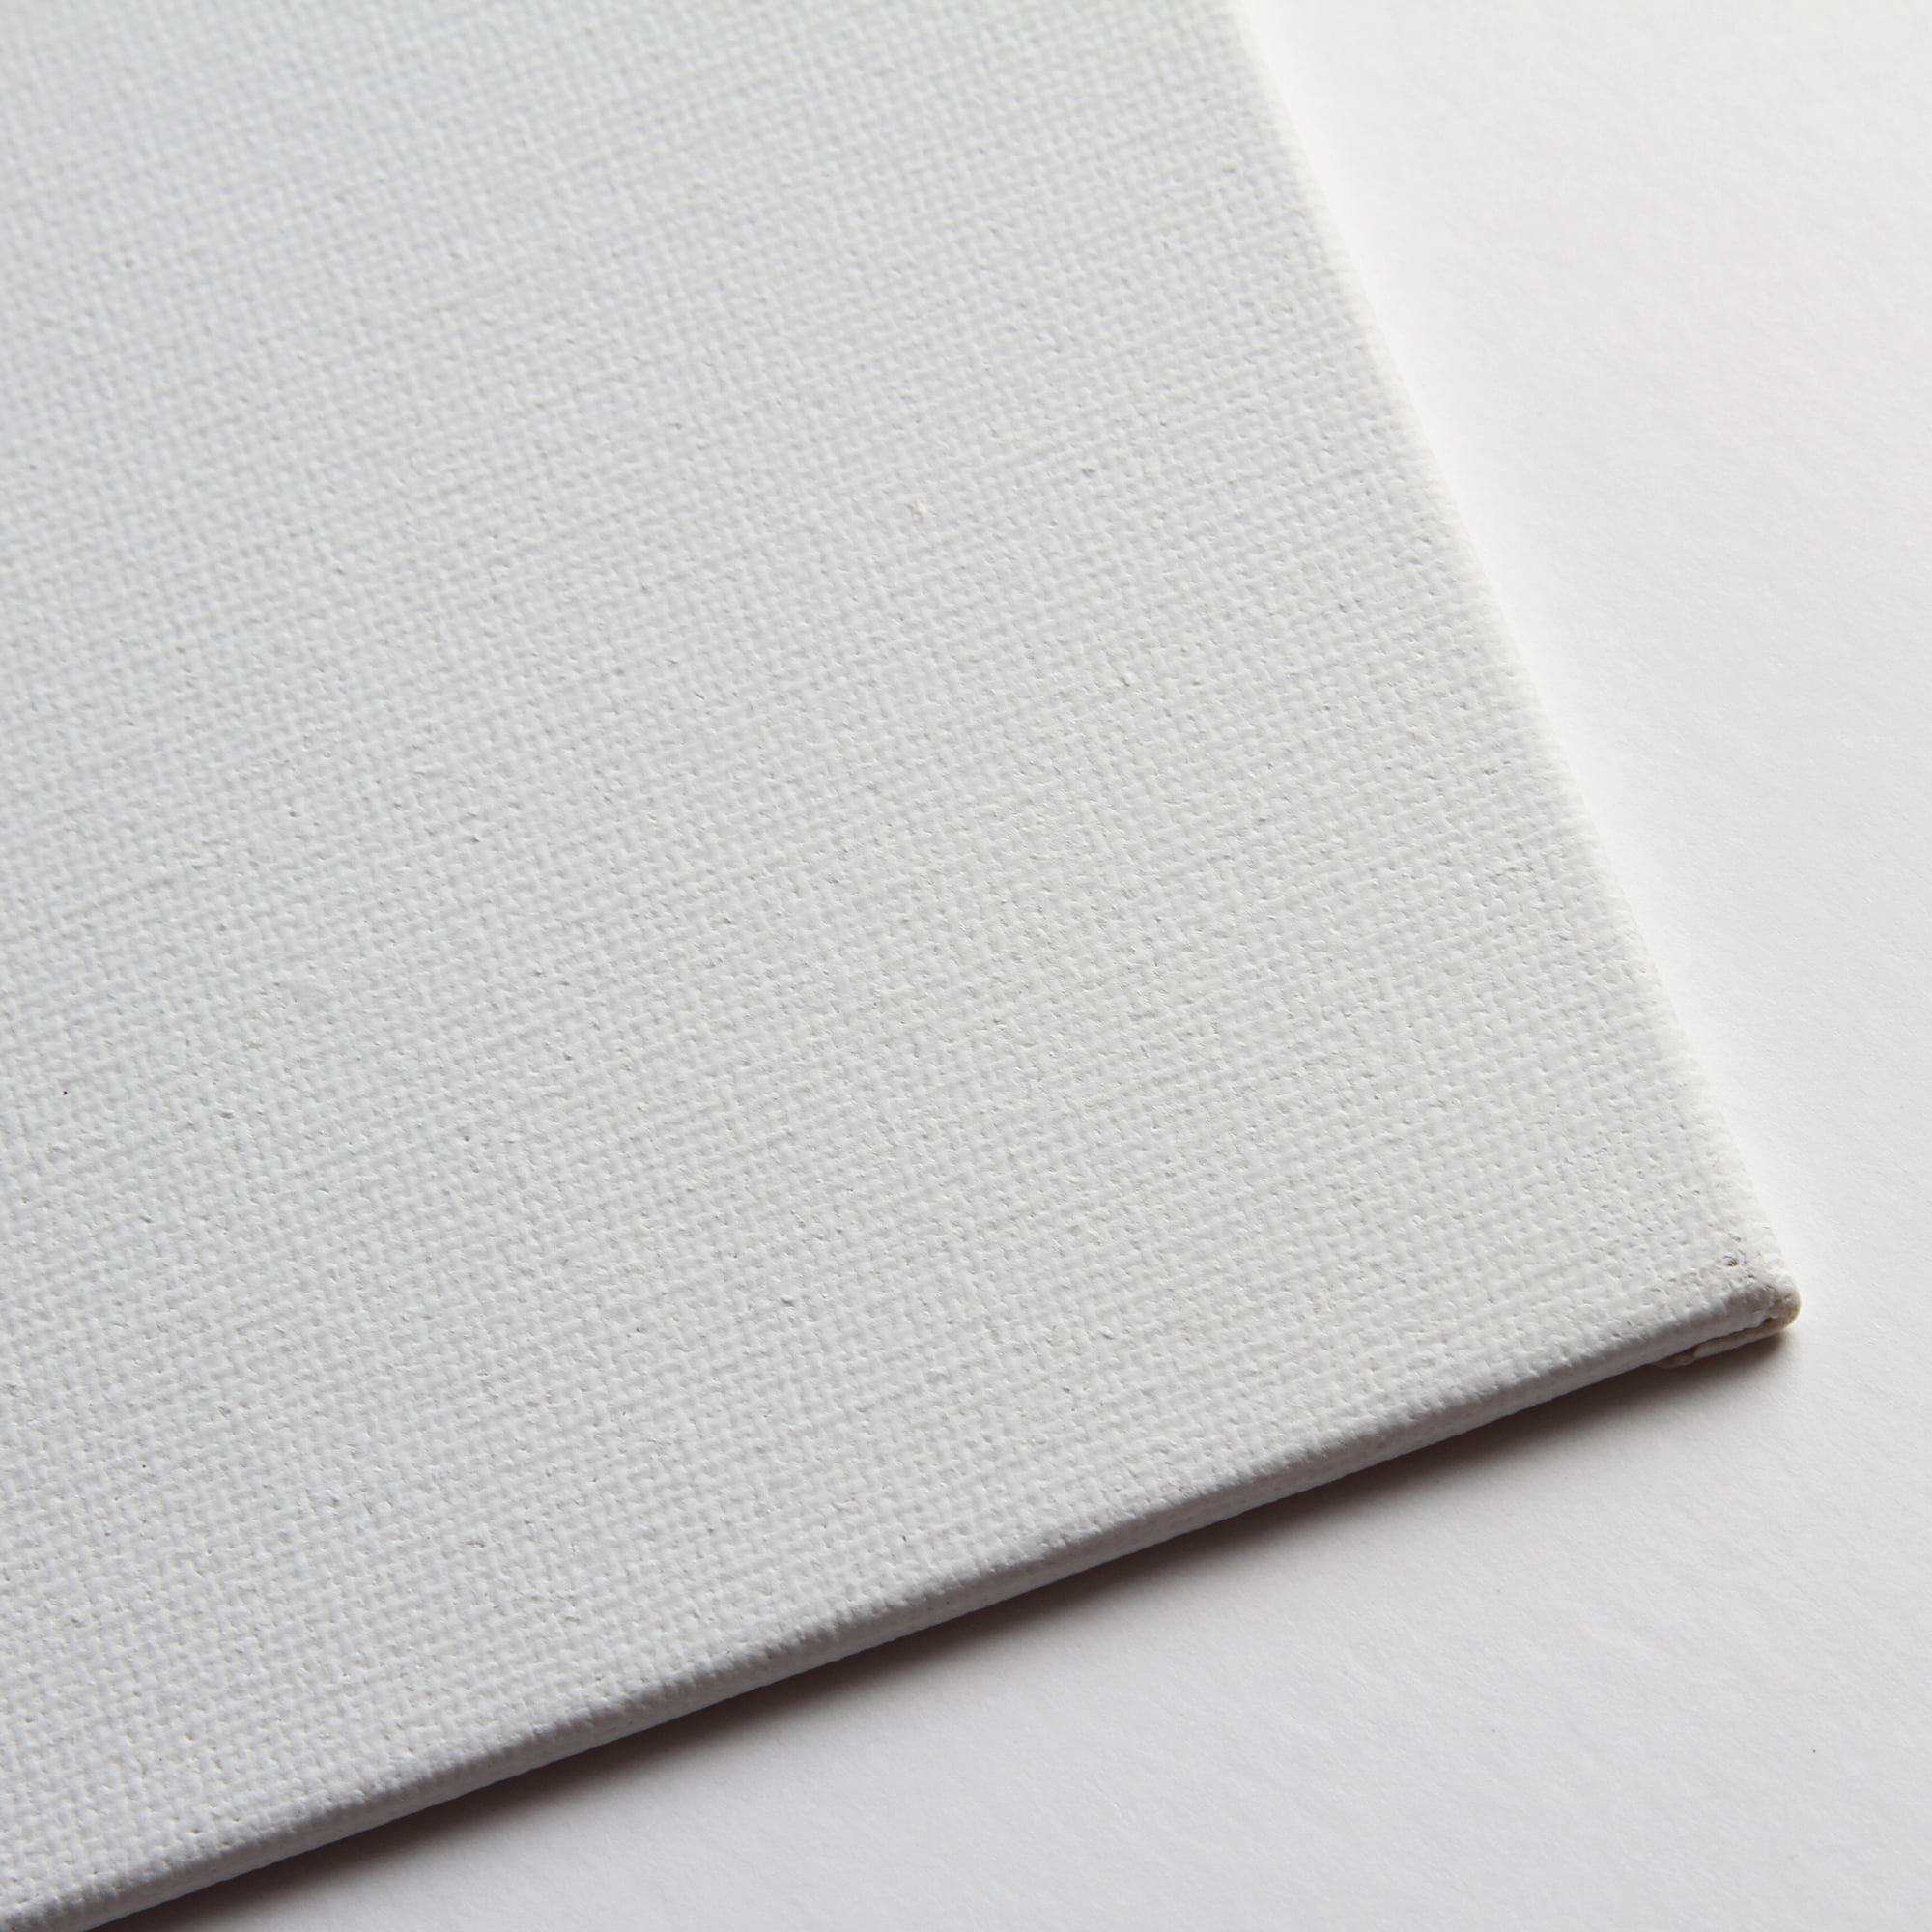 Simply White Canvas Set - 8x10, 3pk